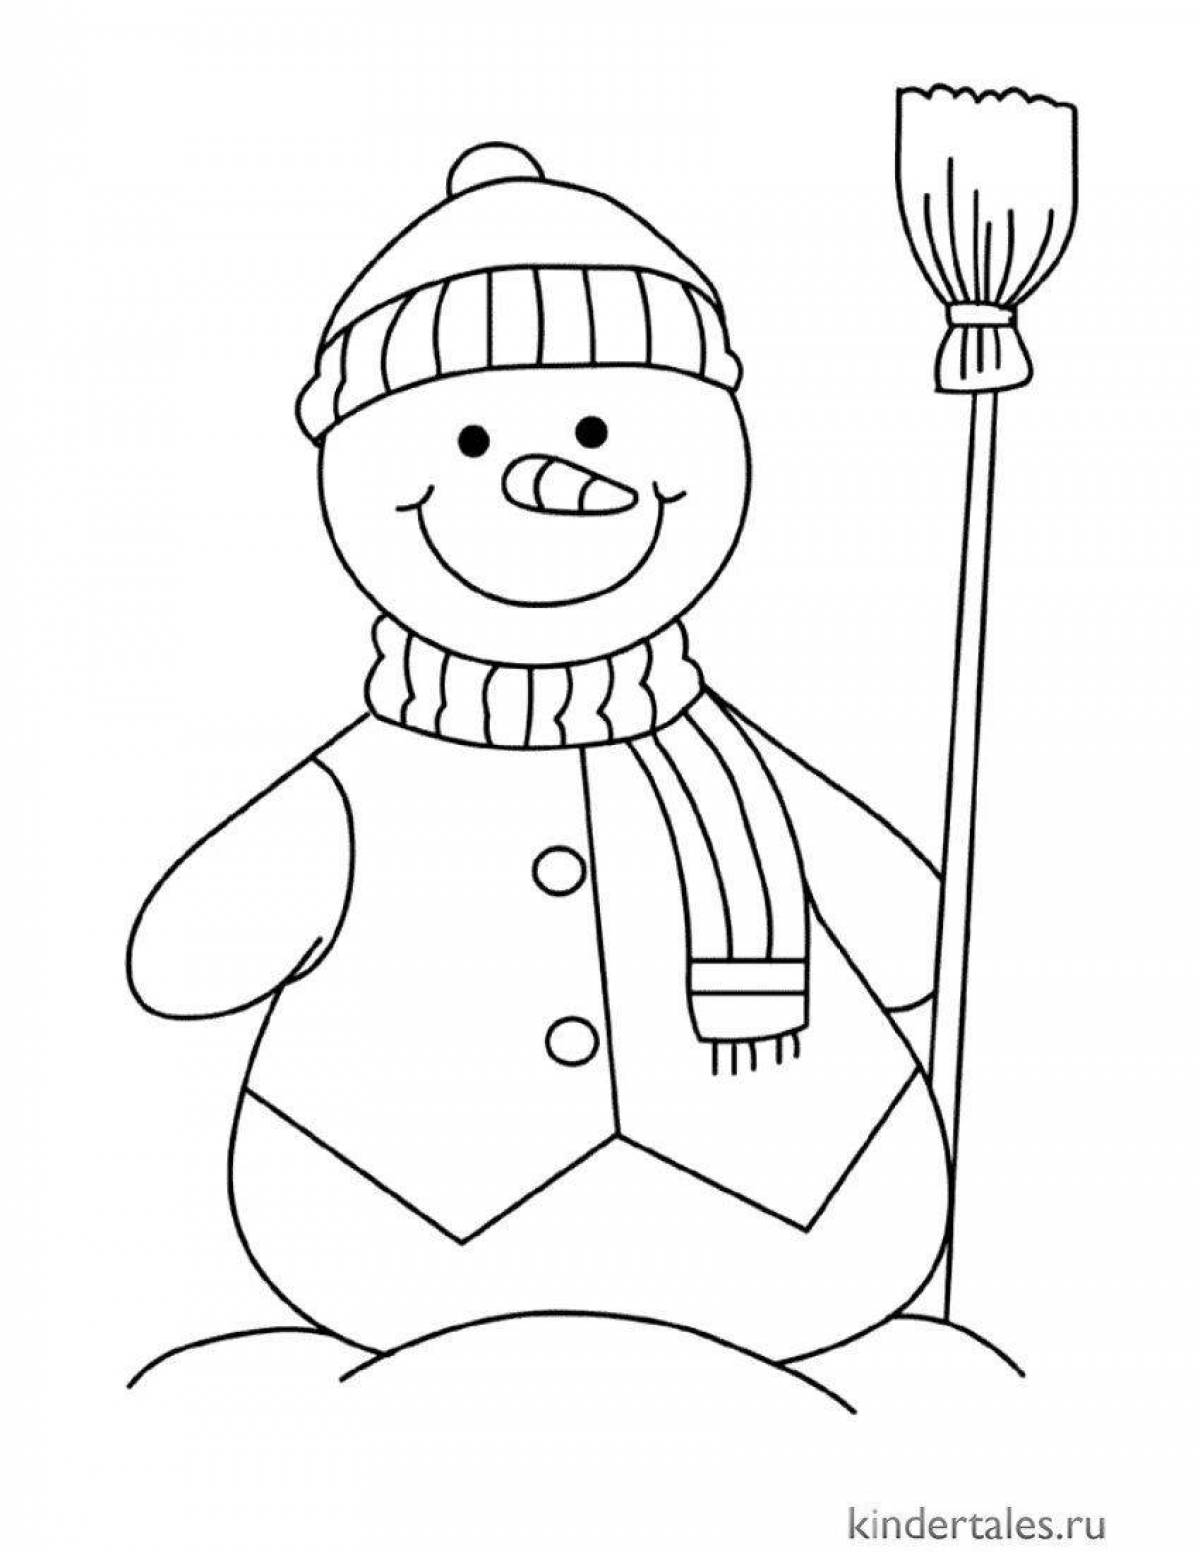 Изысканная раскраска снеговик для детей